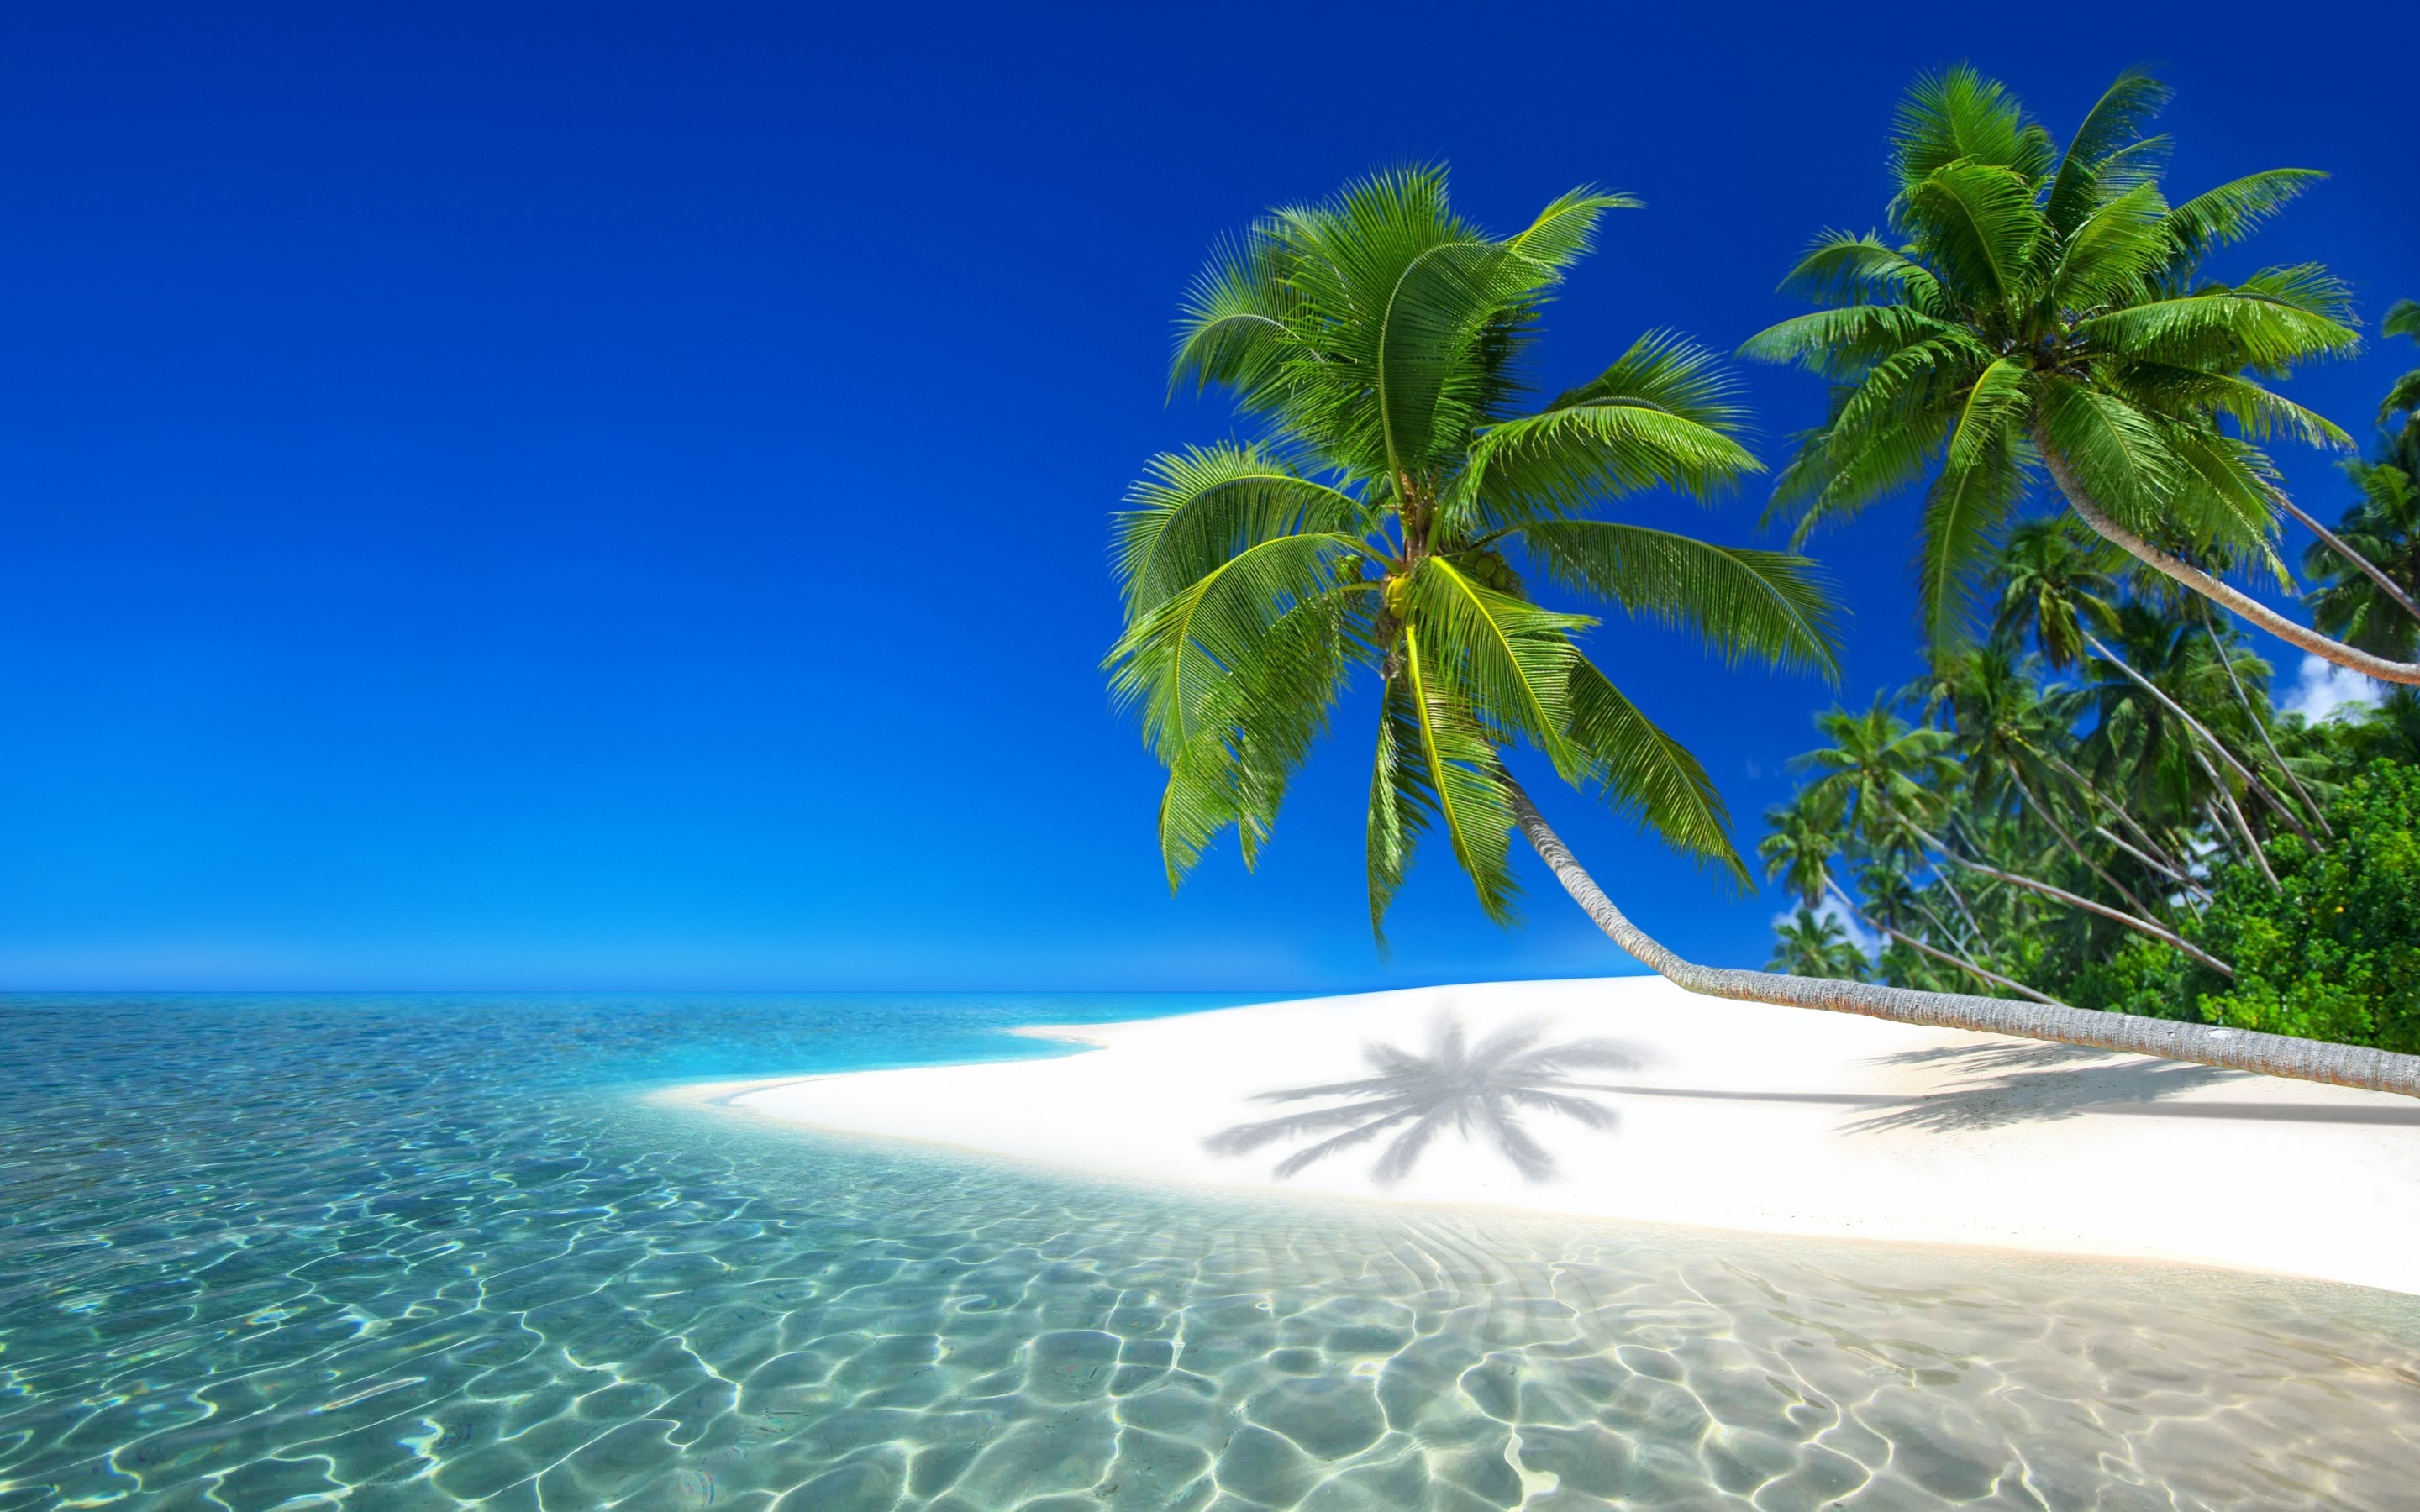 Seychelles Resort, Ocean, Holiday, Beach, Island - Seychelles Wallpaper Iphone , HD Wallpaper & Backgrounds